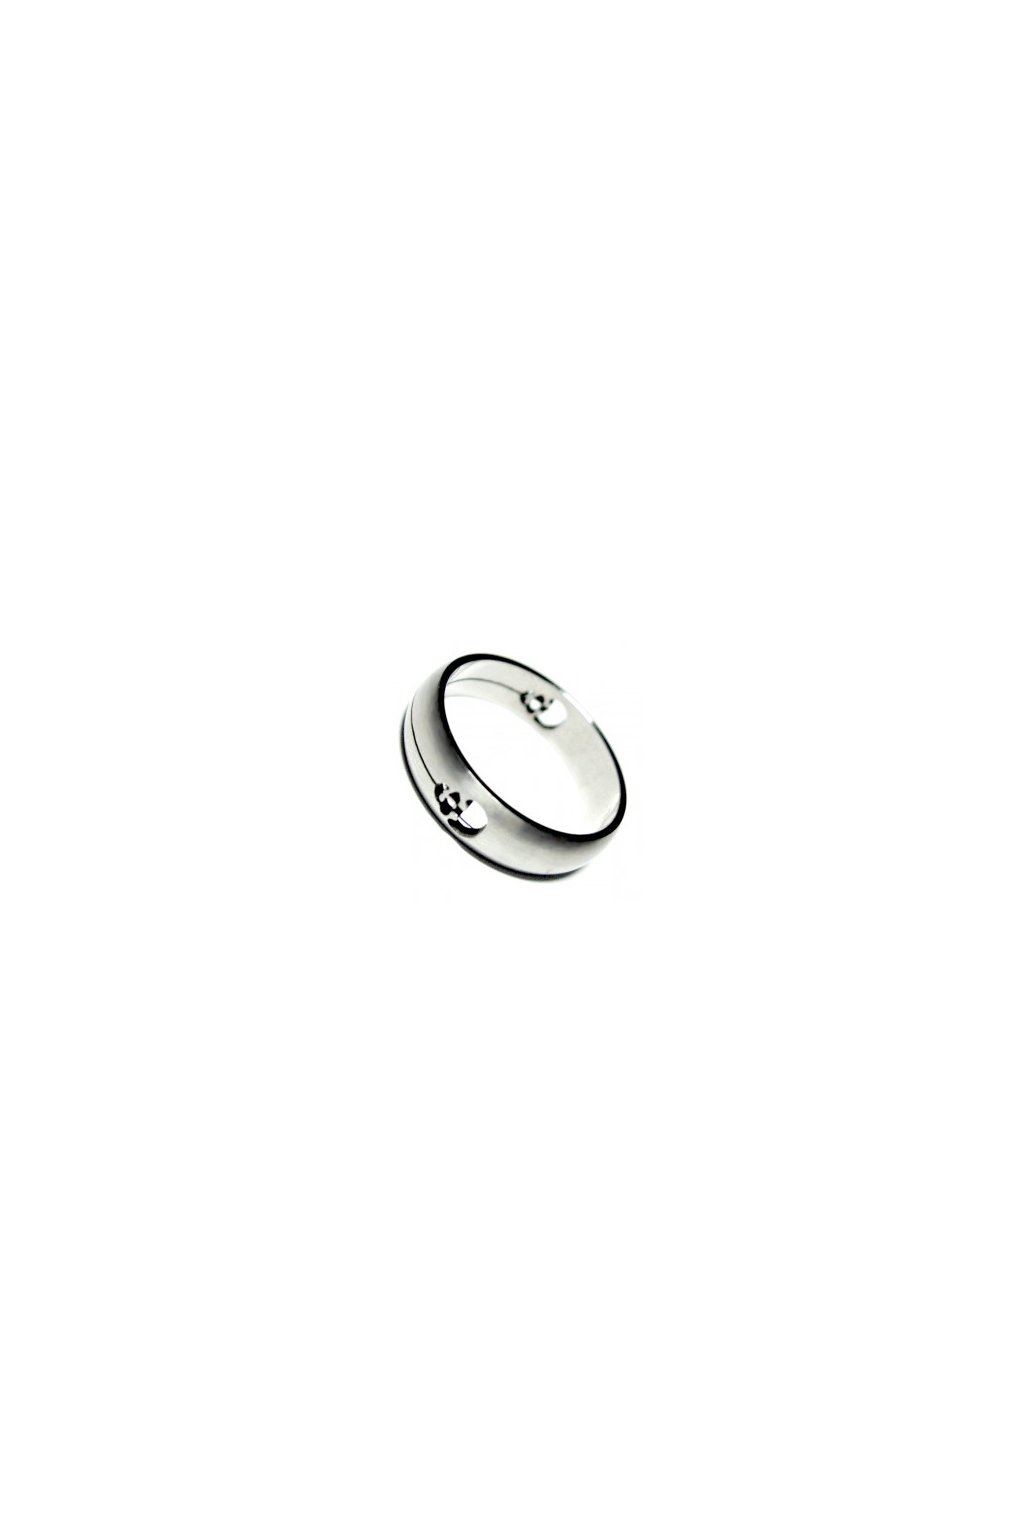 Skalimar Prsten z chirurgické oceli S ORNAMENTEM 212027 (Velikost 22)